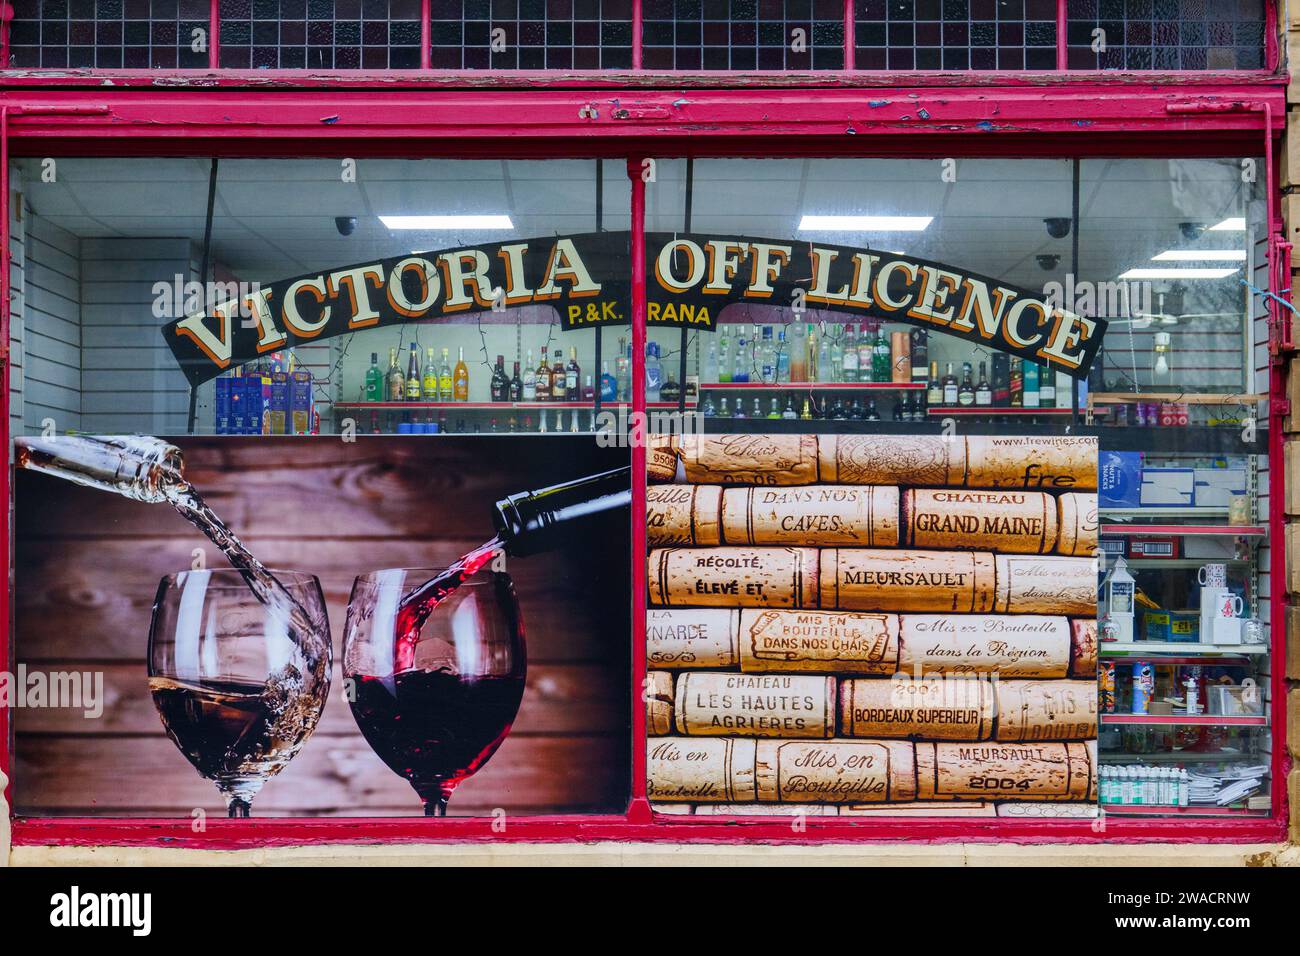 Geschäft vor Victoria Off Licence Alkohol und Cornershop in Saltaire, Bradford. Stockfoto